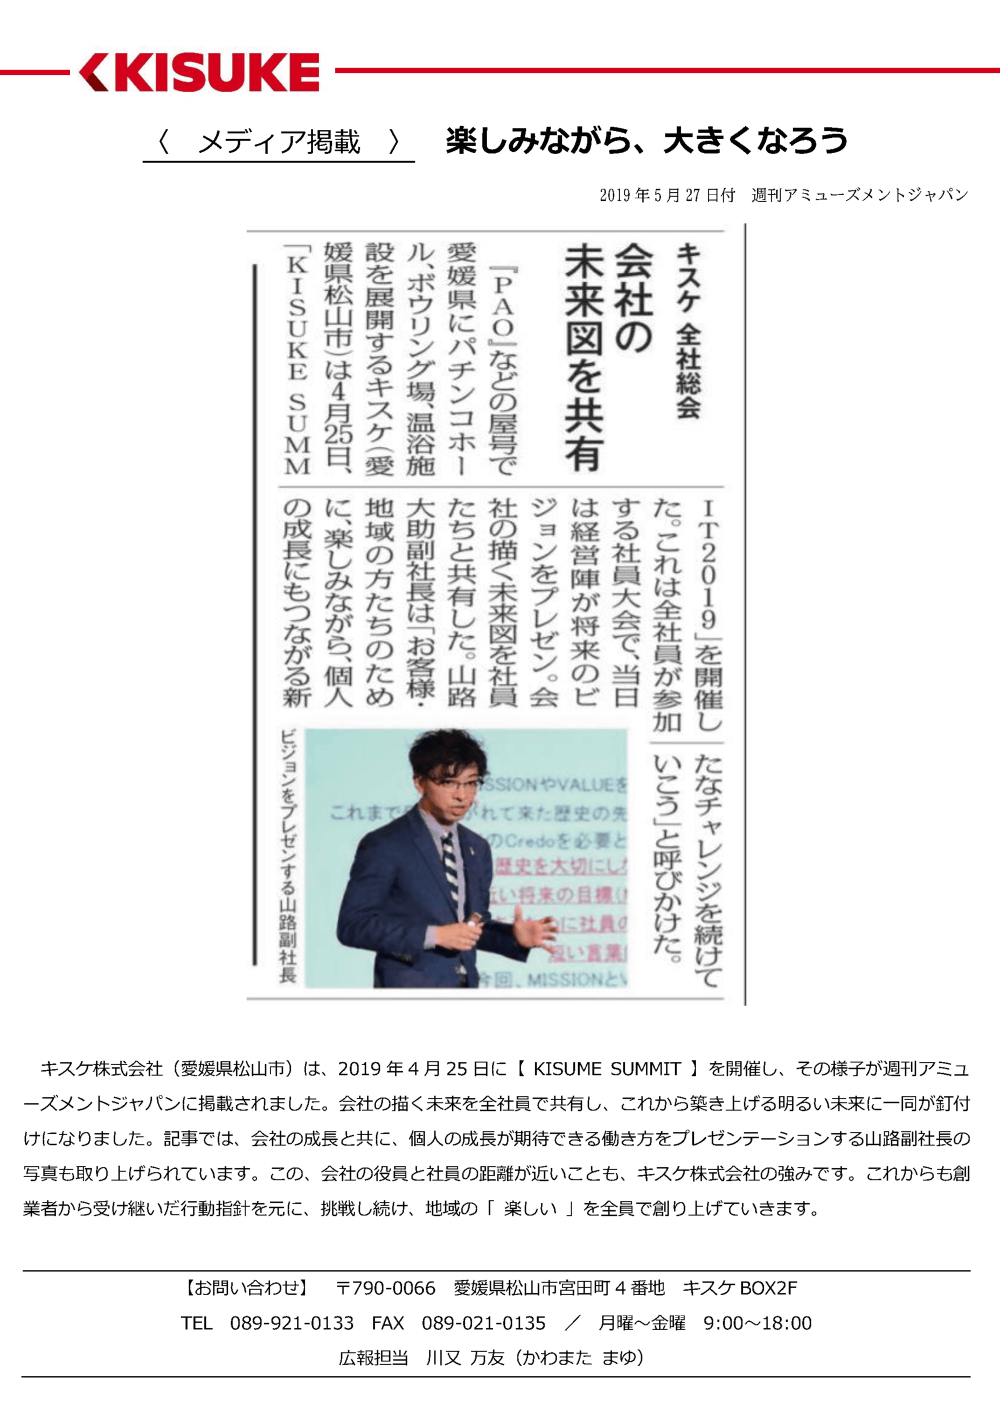 キスケ株式会社（愛媛県松山市）は、2019年4月25日に【KISUMESUMMIT】を開催し、その様子が週刊アミューズメントジャパンに掲載されました。会社の描く未来を全社員で共有し、これから築き上げる明るい未来に一同が釘付けになりました。記事では、会社の成長と共に、個人の成長が期待できる働き方をプレゼンテーションする山路副社長の写真も取り上げられています。この、会社の役員と社員の距離が近いことも、キスケ株式会社の強みです。これからも創業者から受け継いだ行動指針を元に、挑戦し続け、地域の「楽しい」を全員で創り上げていきます。